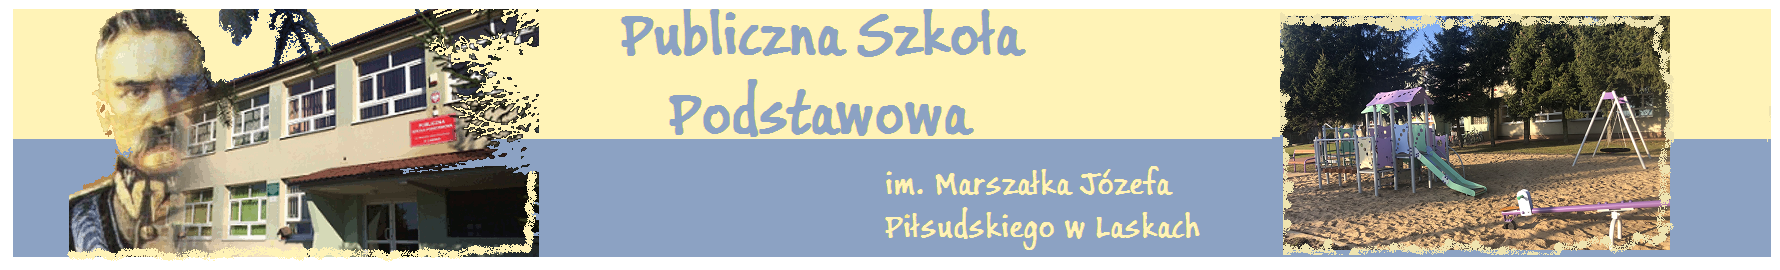 Publiczna Szkoła Podstawowa w Laskach